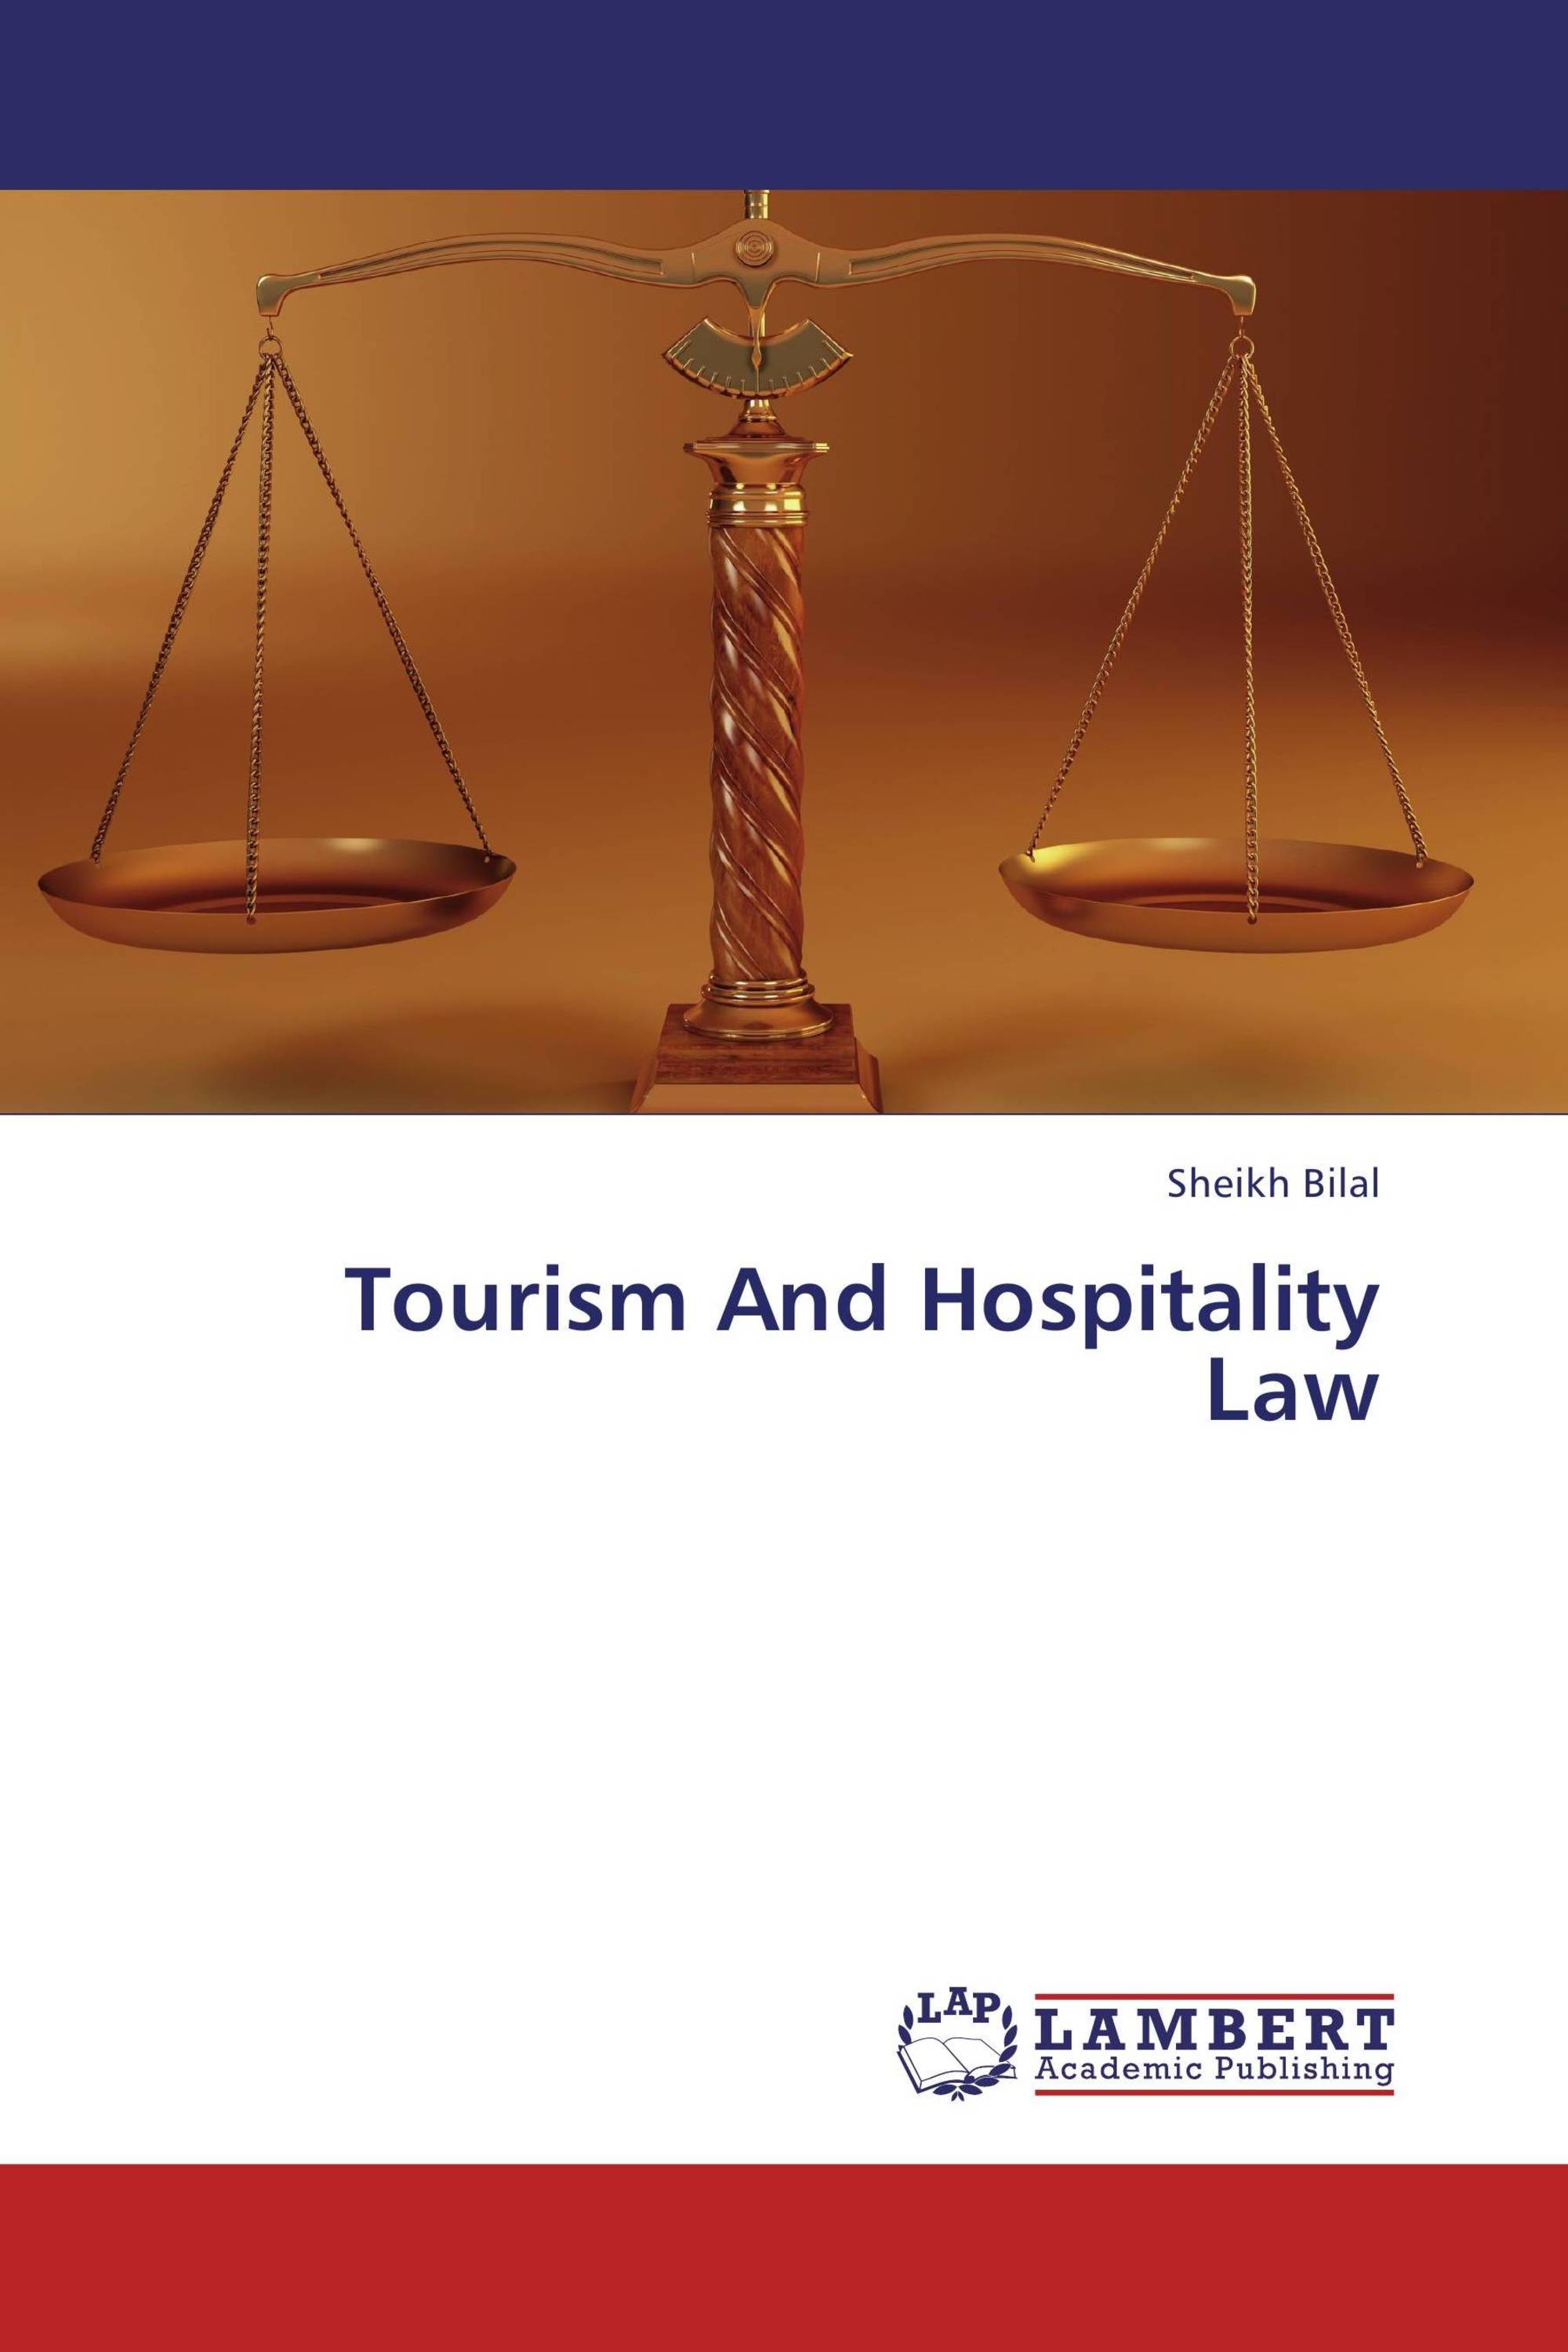 define tourism law